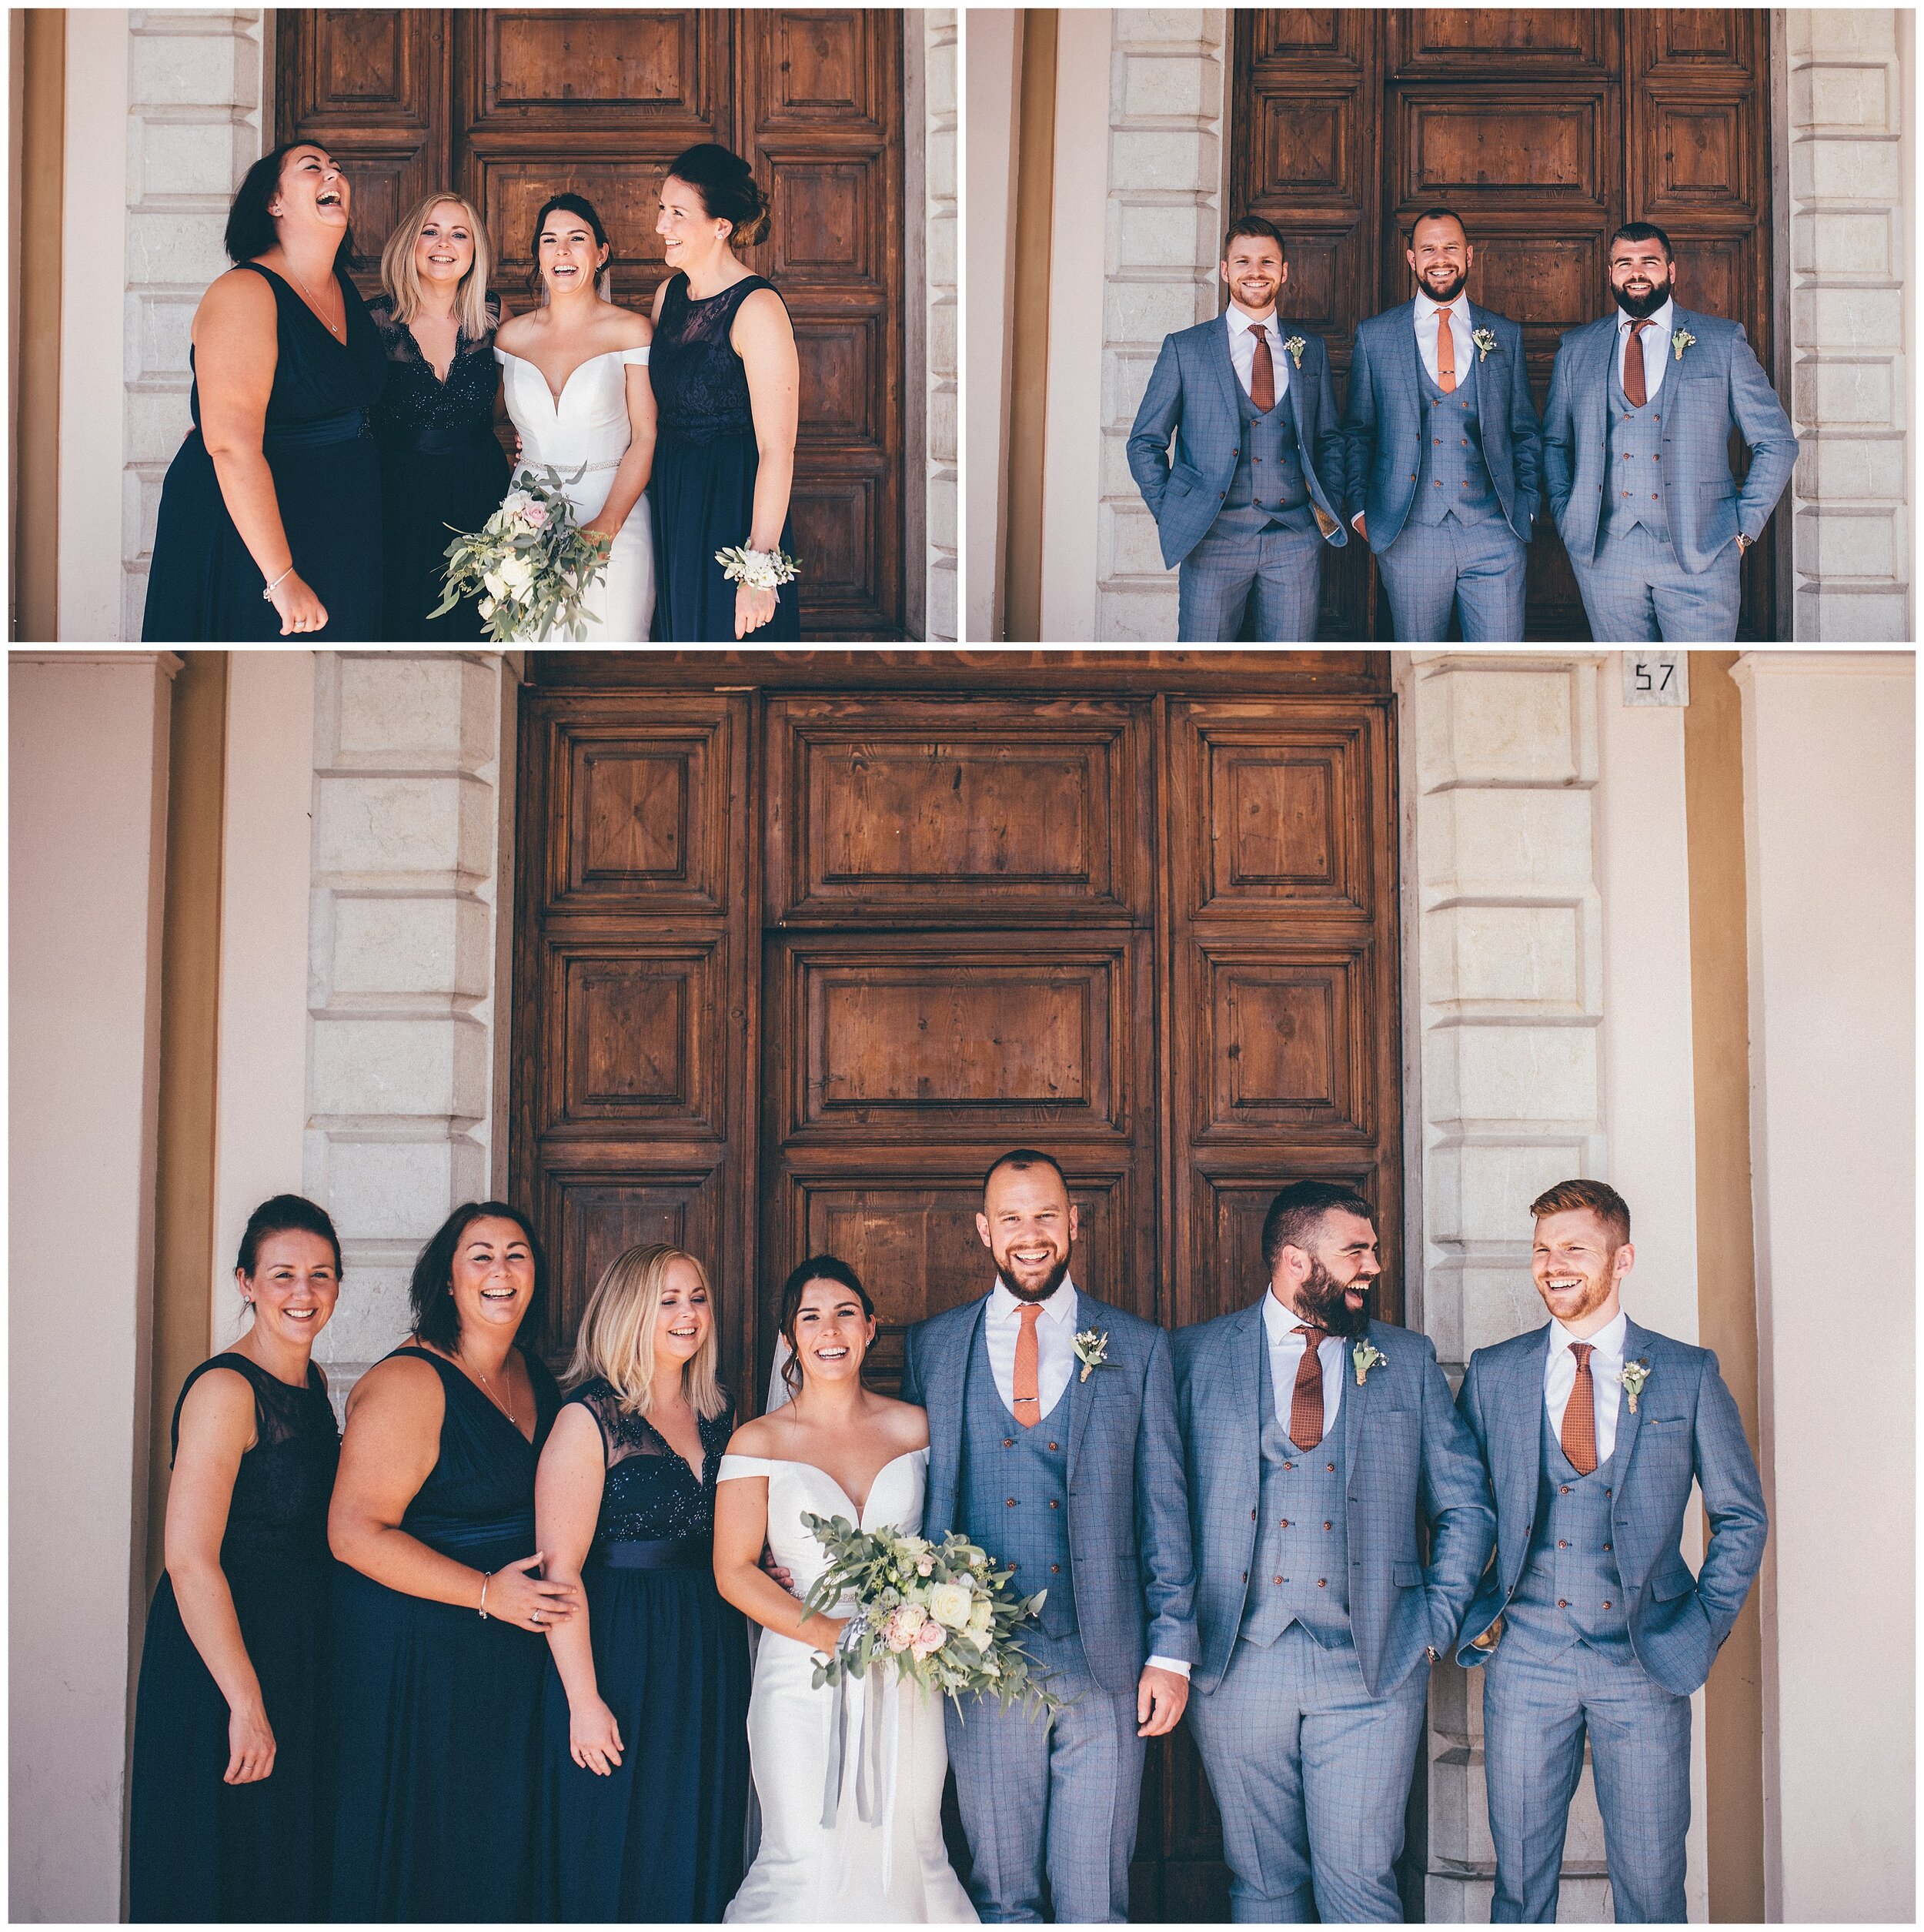 Wedding guests pose for group photograhs at Palazzo della Magnifica Patria di Salo in Salo, Lake Garda.